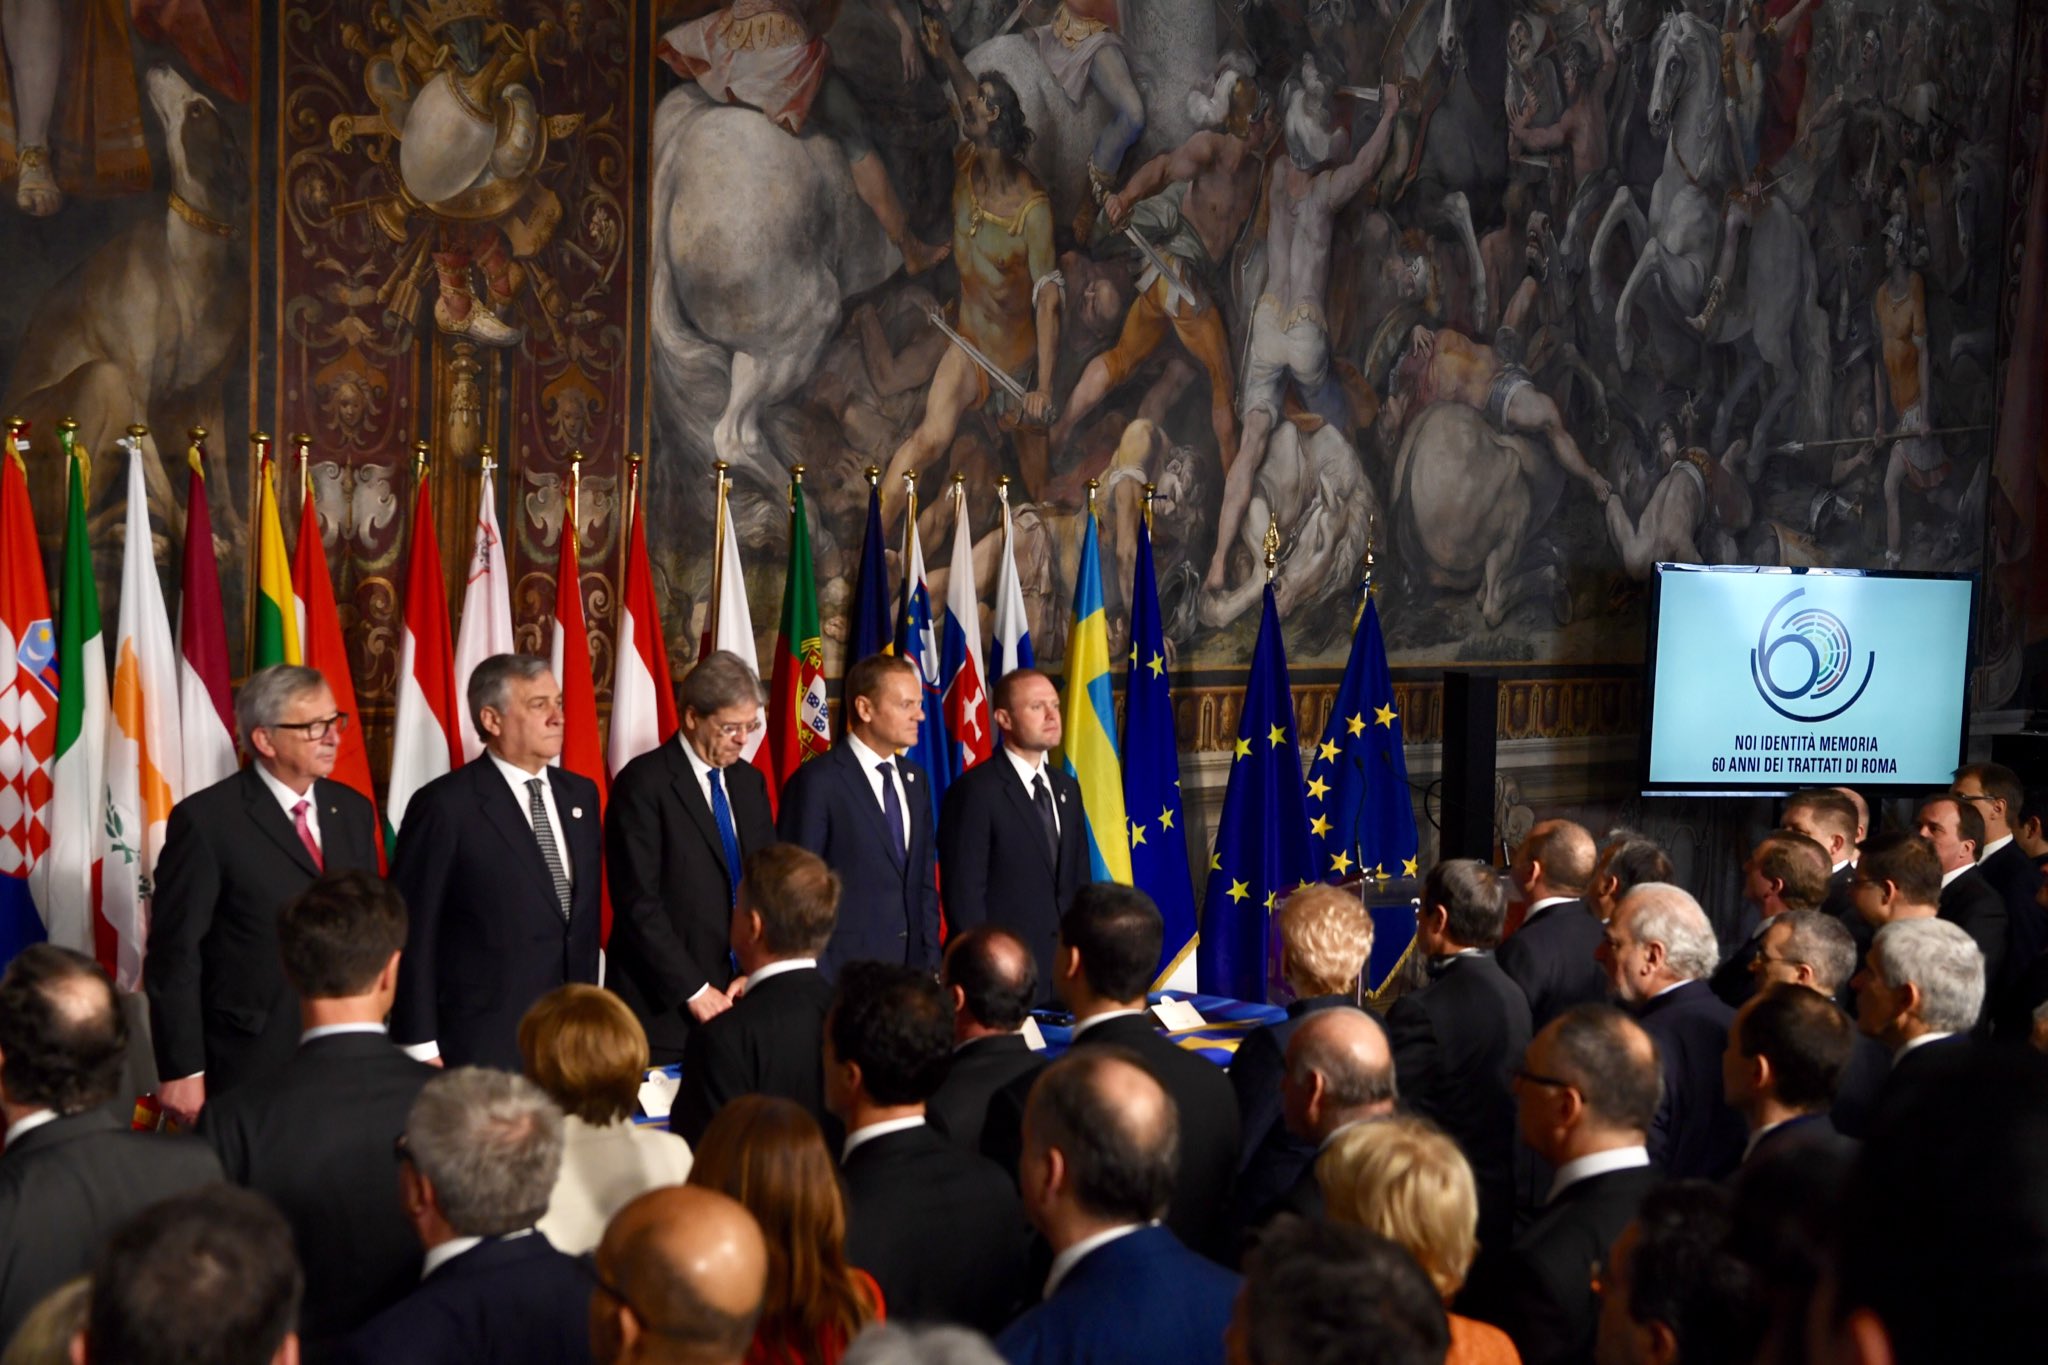 ԵՄ 27 երկրների առաջնորդները ստորագրել են կառույցի ապագայի մասին Հռոմի հռչակագիրը (լուսանկարներ)